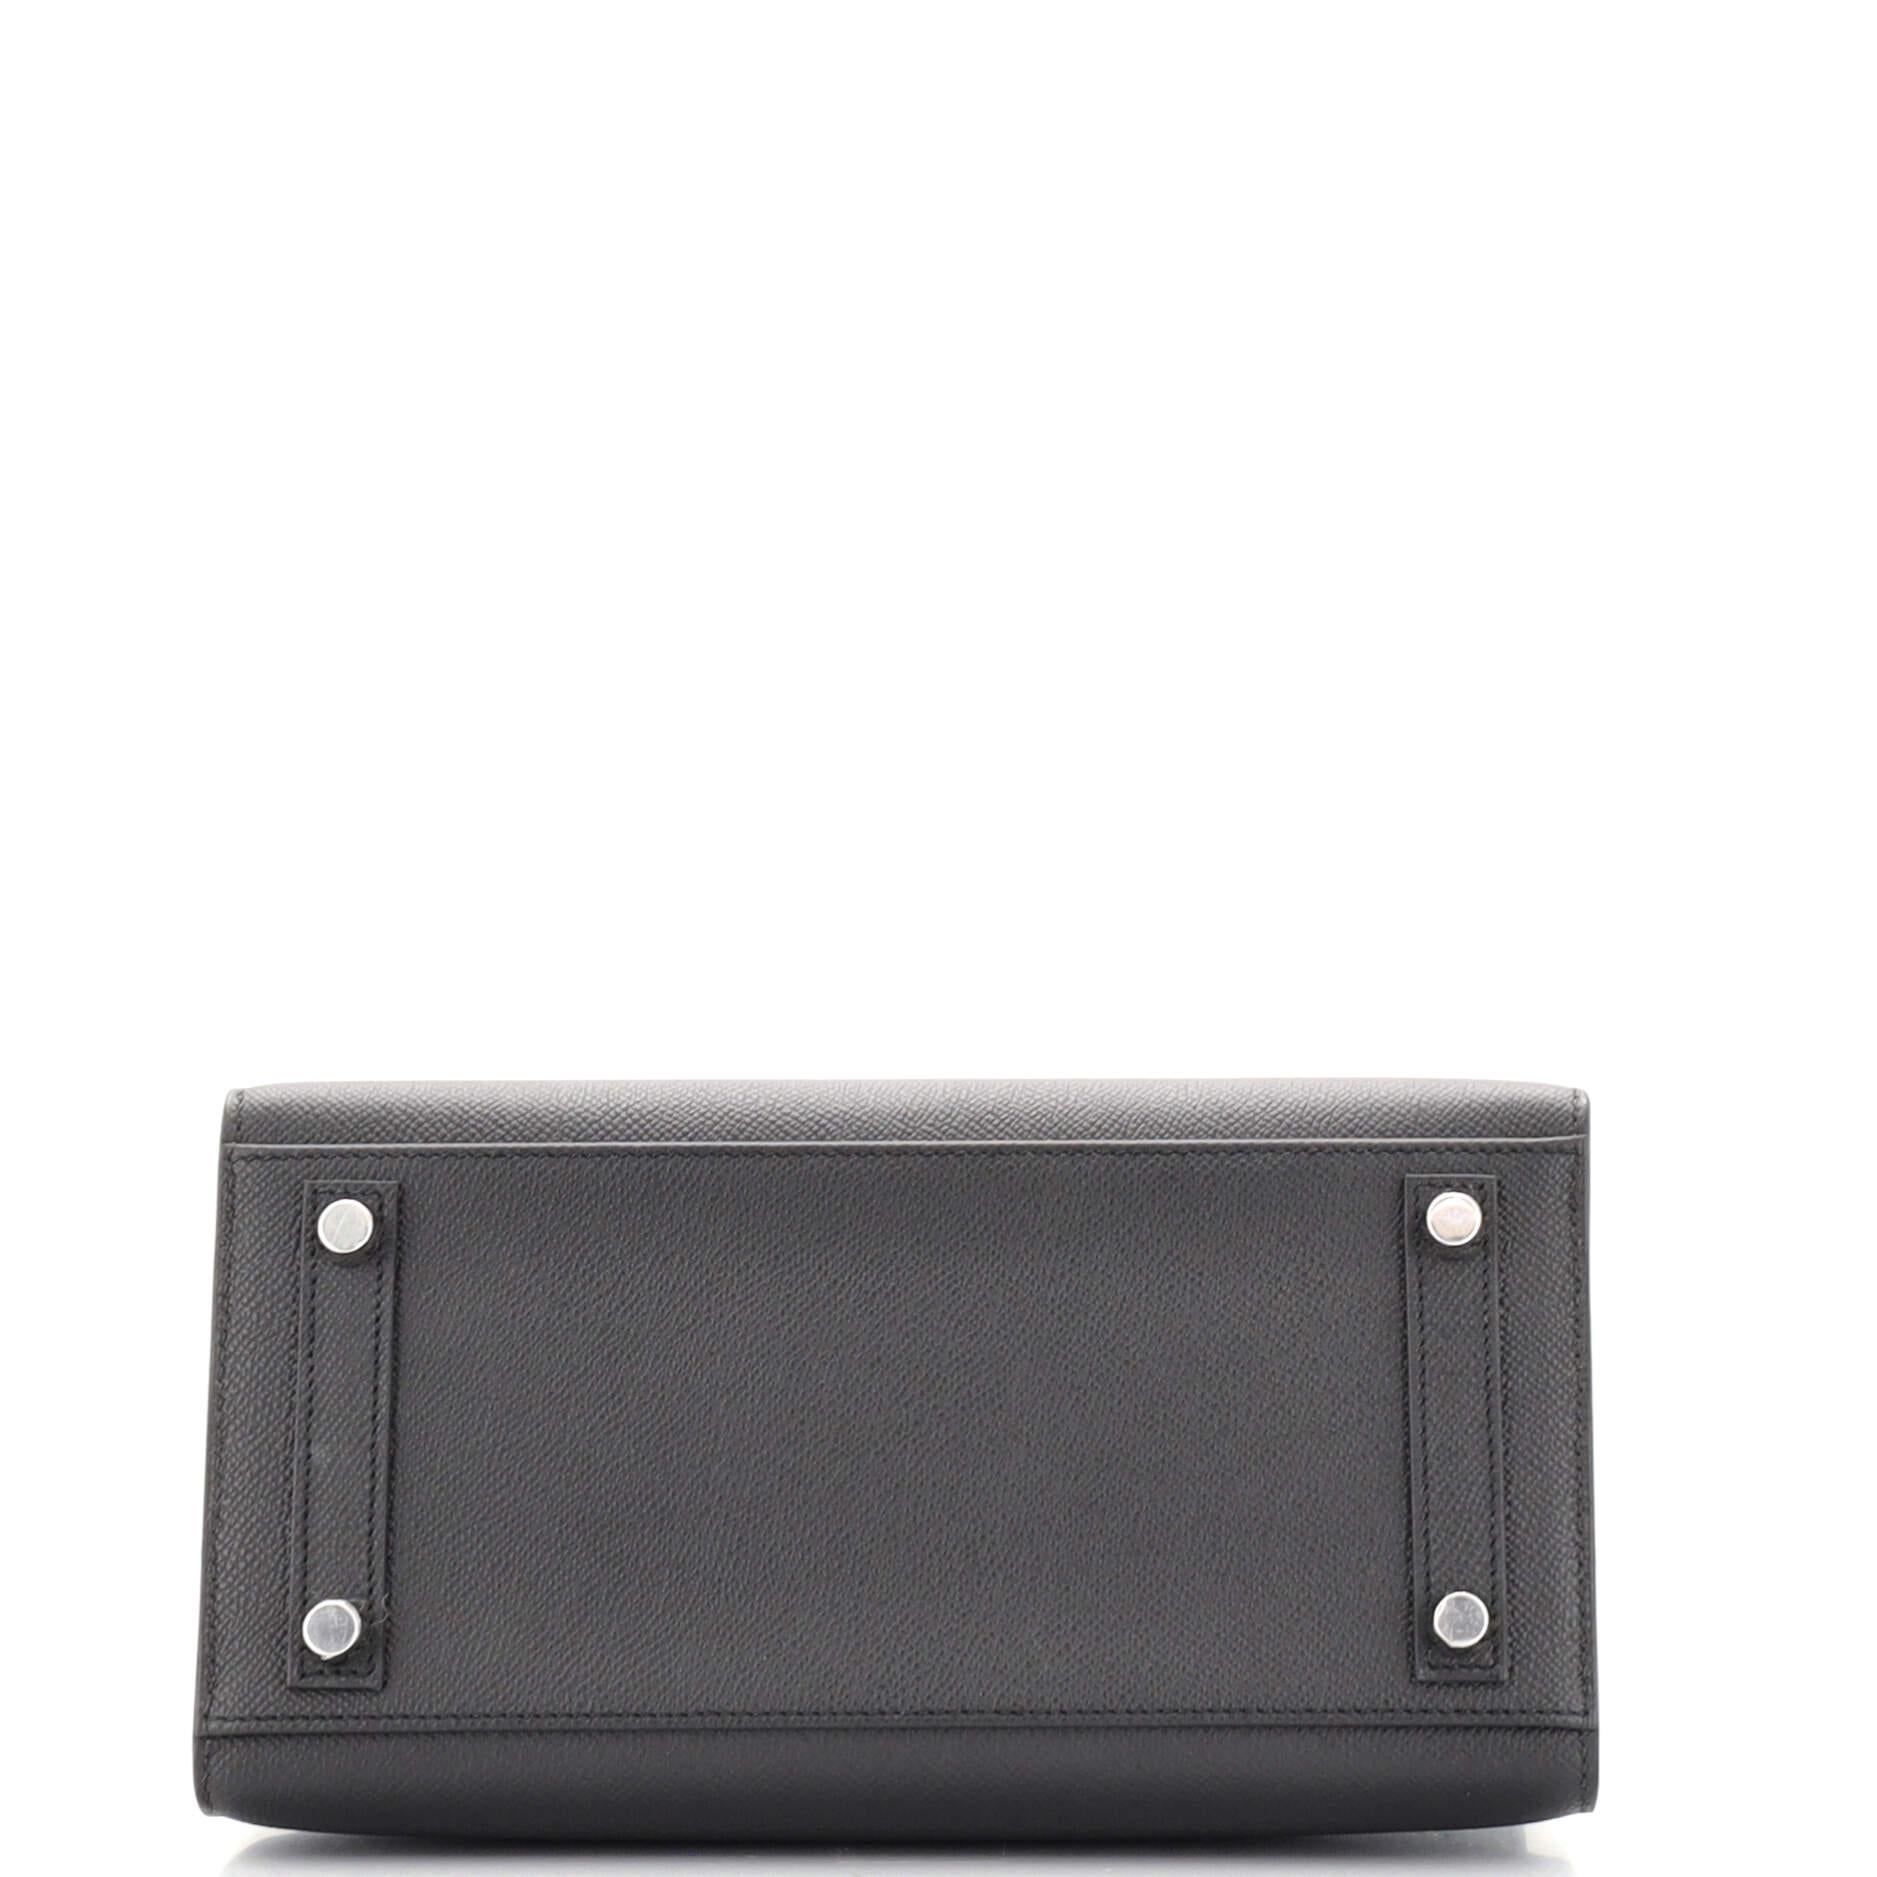 Women's or Men's Hermes Birkin Sellier Bag Noir Epsom with Palladium Hardware 25